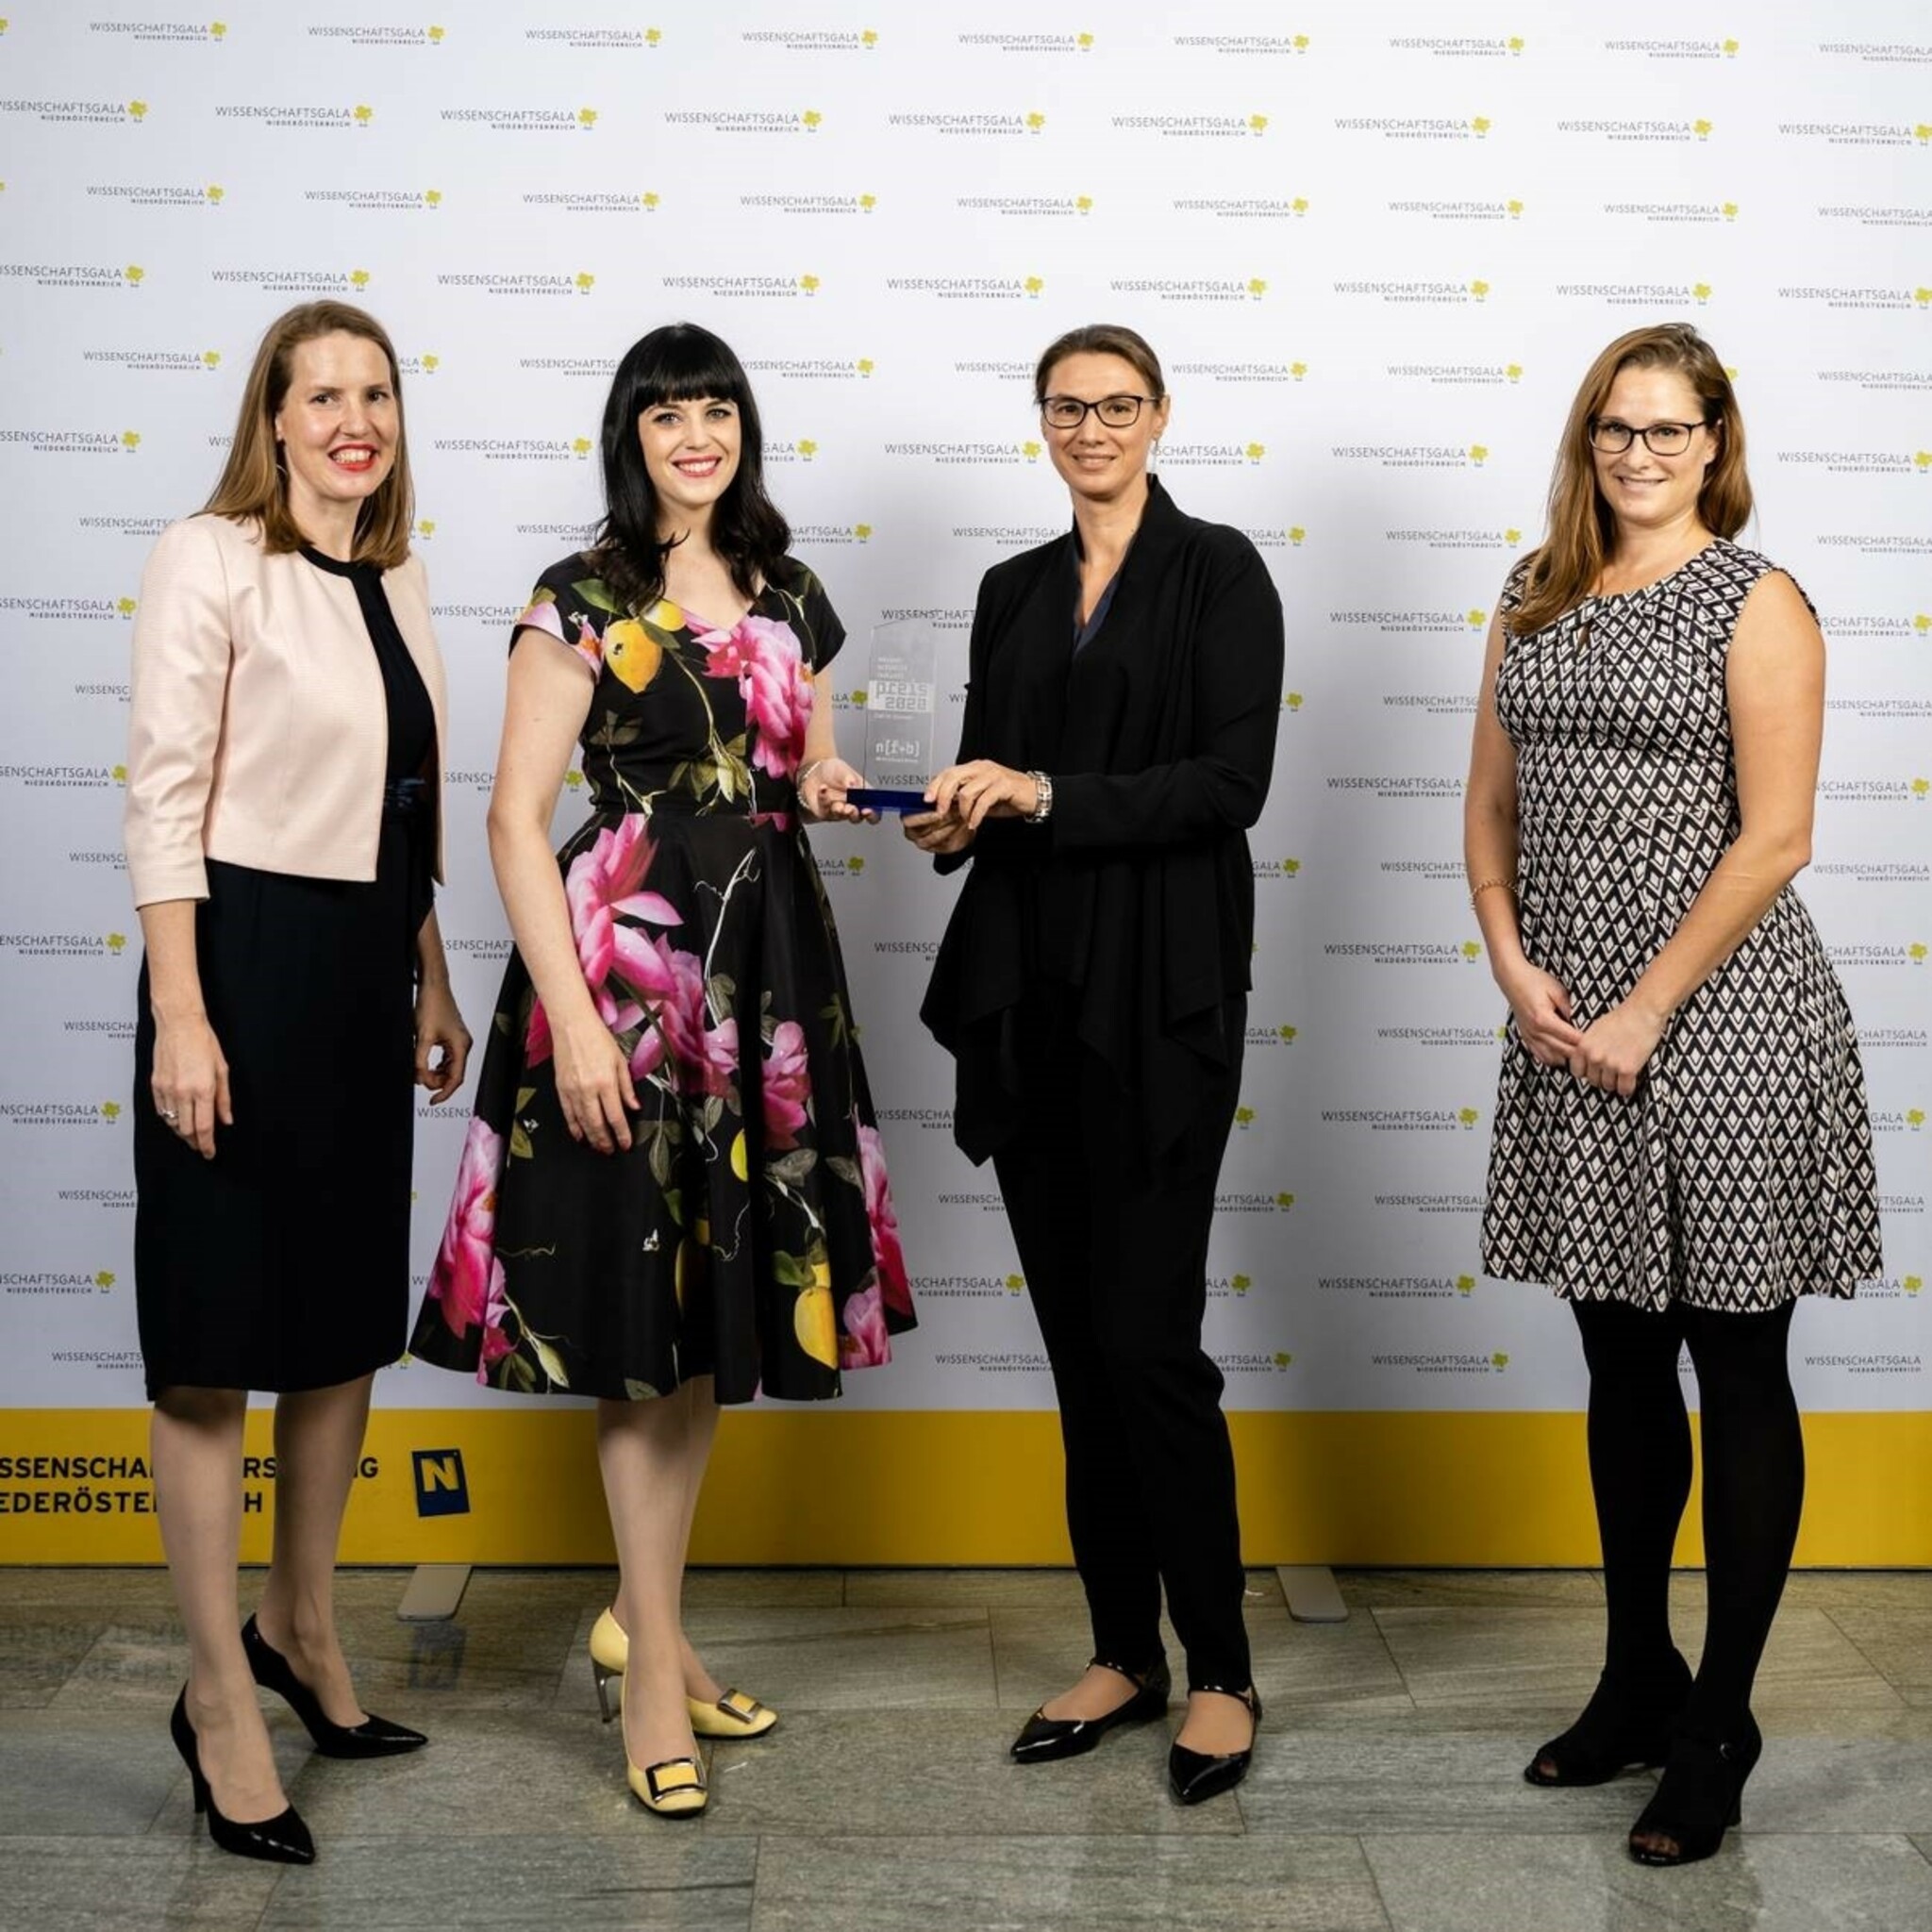 Die Preisträgerinnen des WZP 2020 Angela Bitto-Nemling, Nicole Amberg, Lisa Cichocki, Melissa Stouffer halten die Trophäe in der Hand